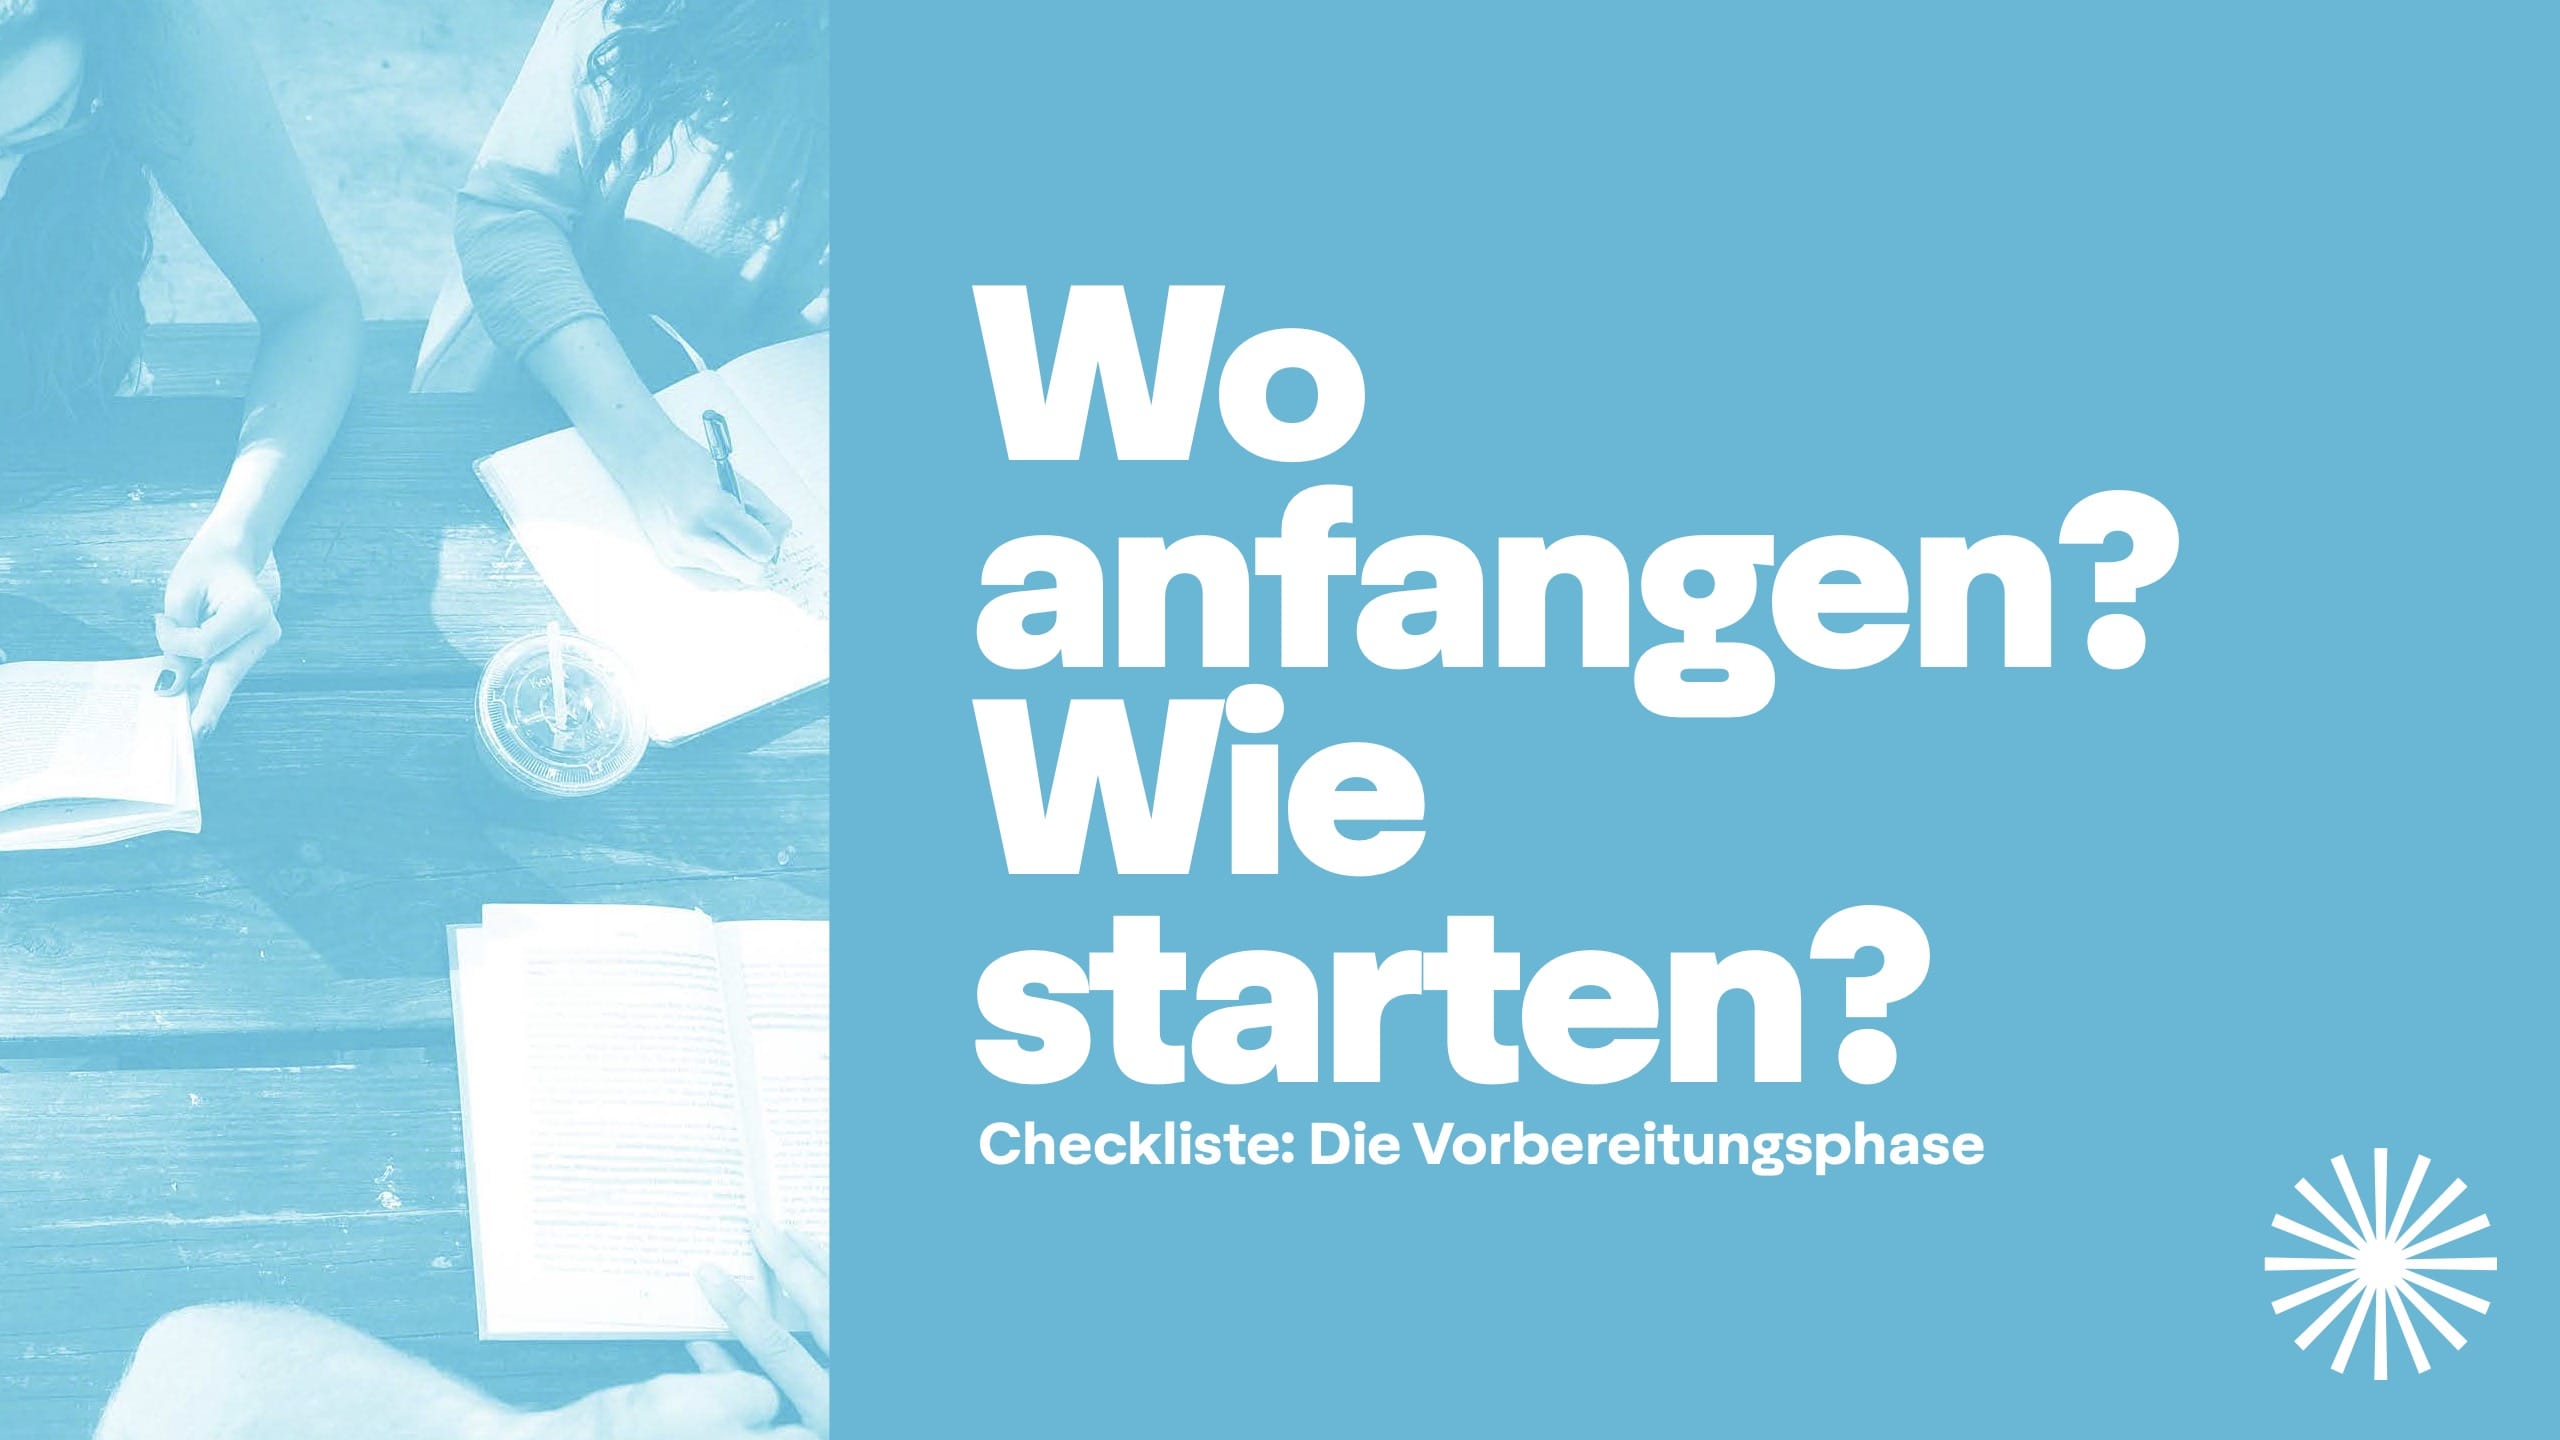 Whitepaper Digital Marketing fuer Wirtschaftsverbaende Interessengemeinschaften und Foerdervereine 2022 00